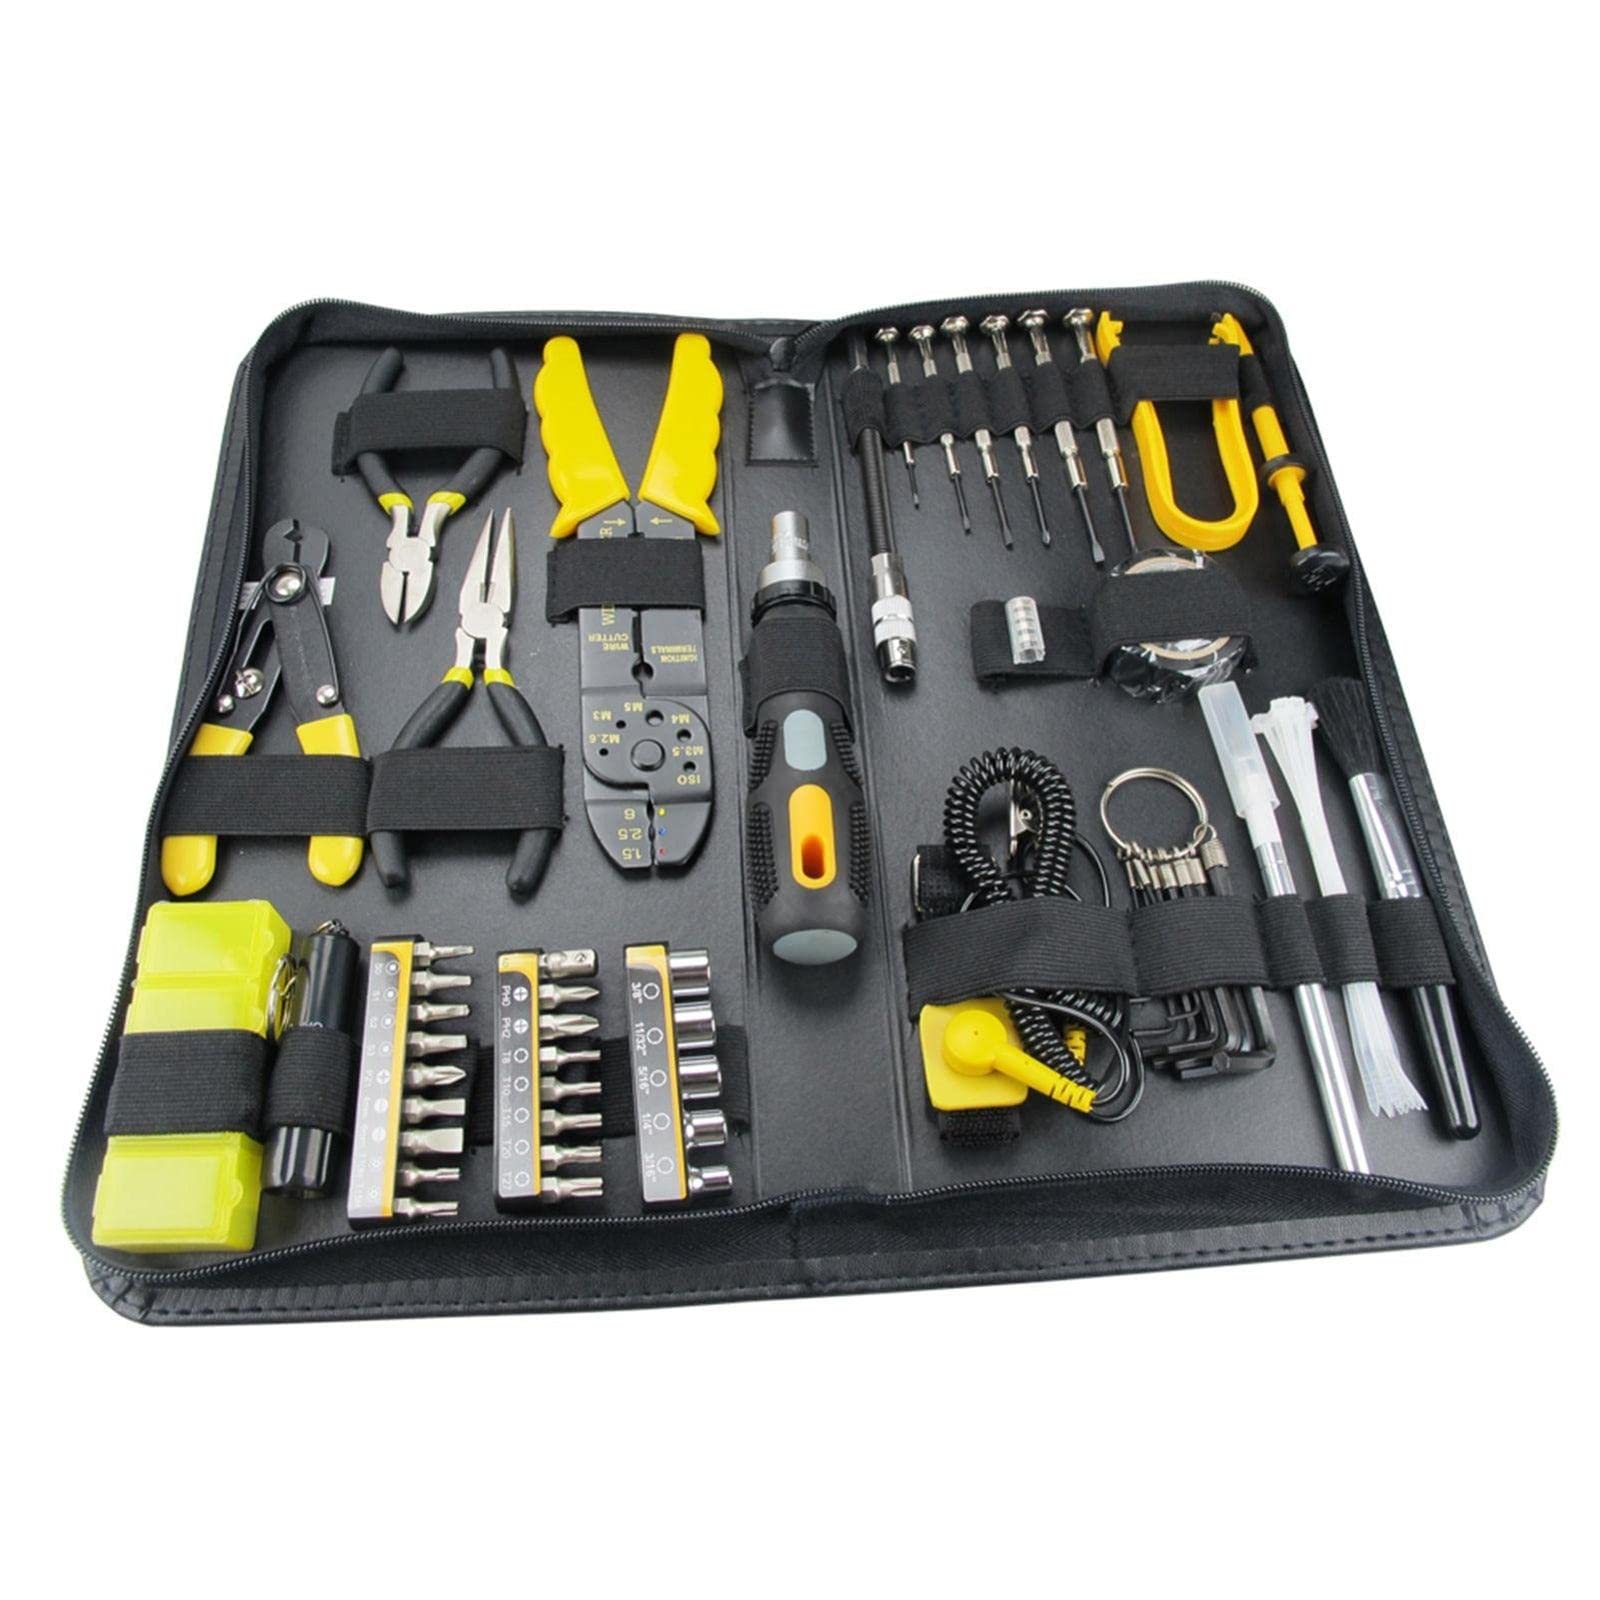 Repair toolkit or tools